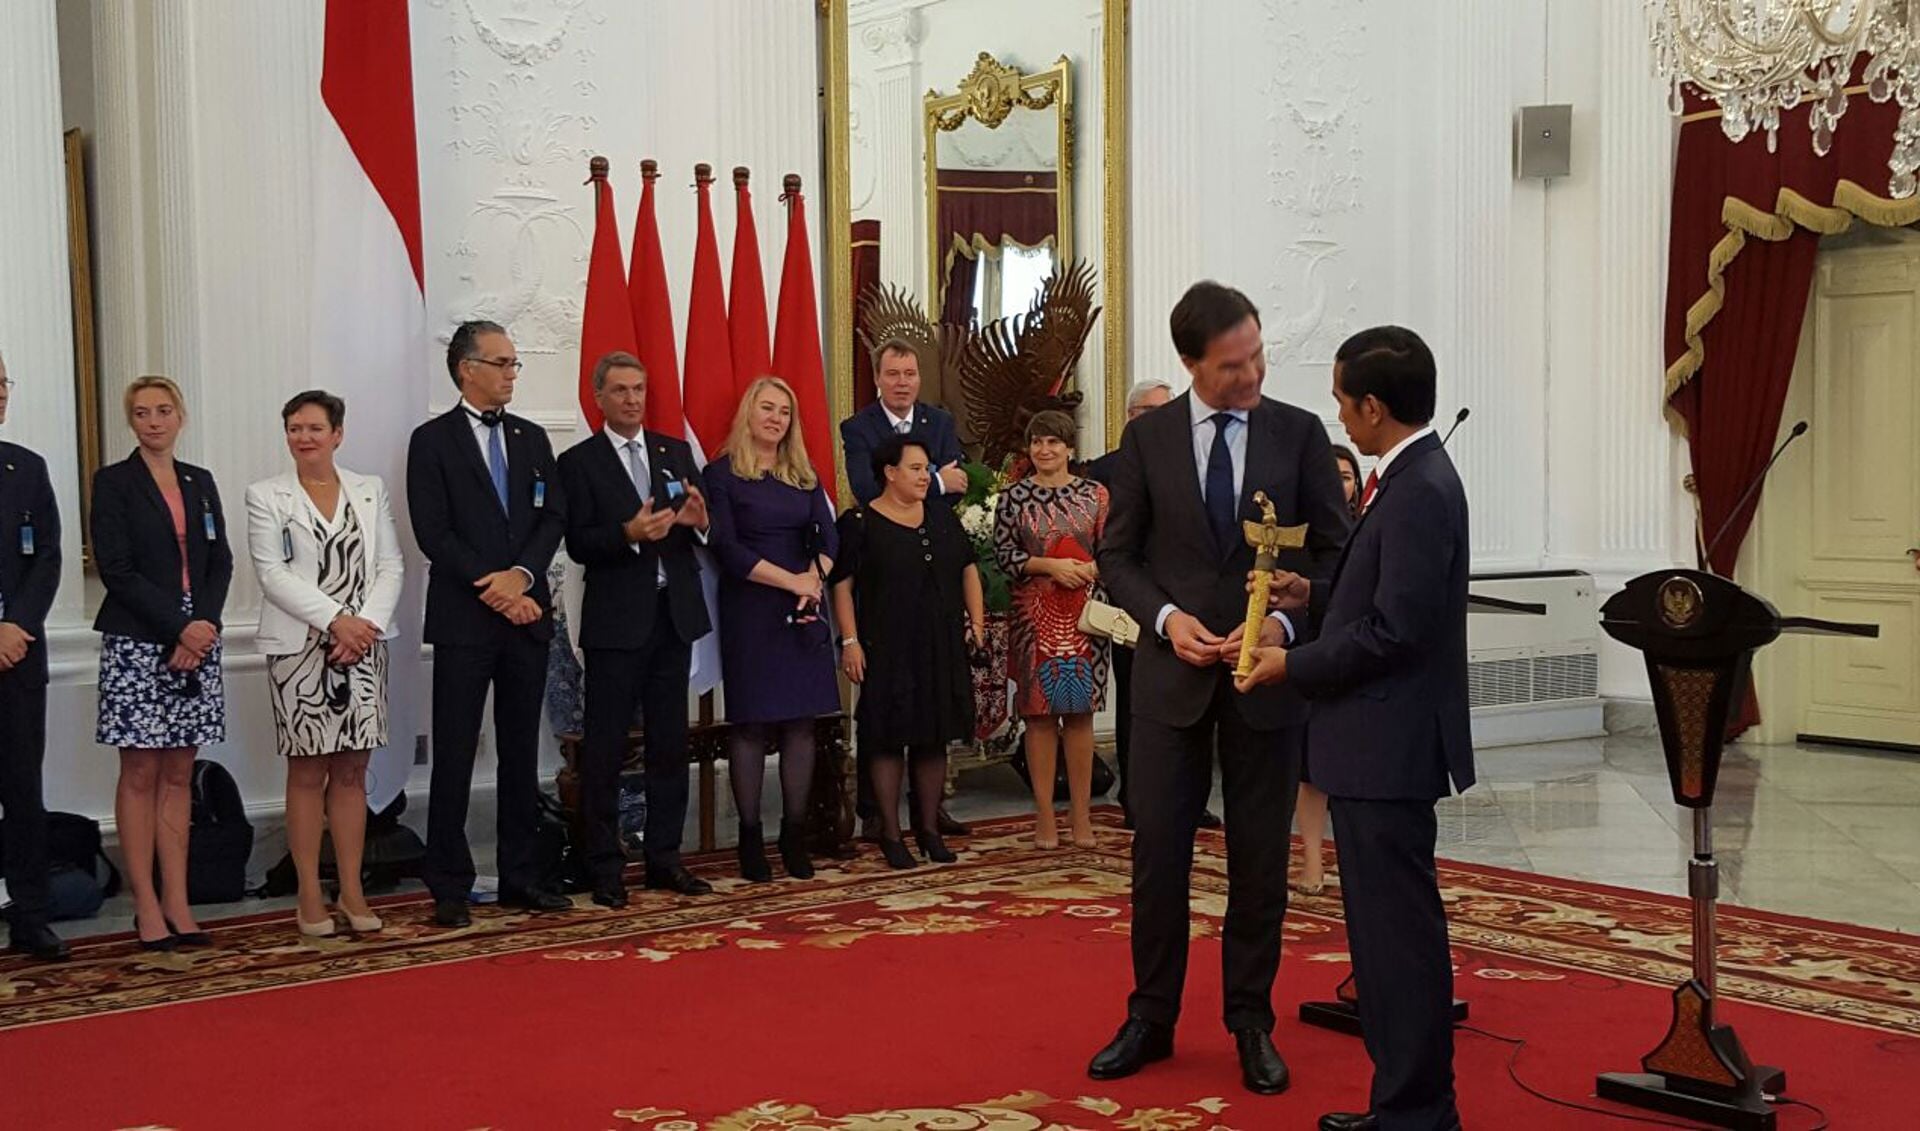 Premier Rutte overhandigt de kris aan de Indonesische president Widodo.